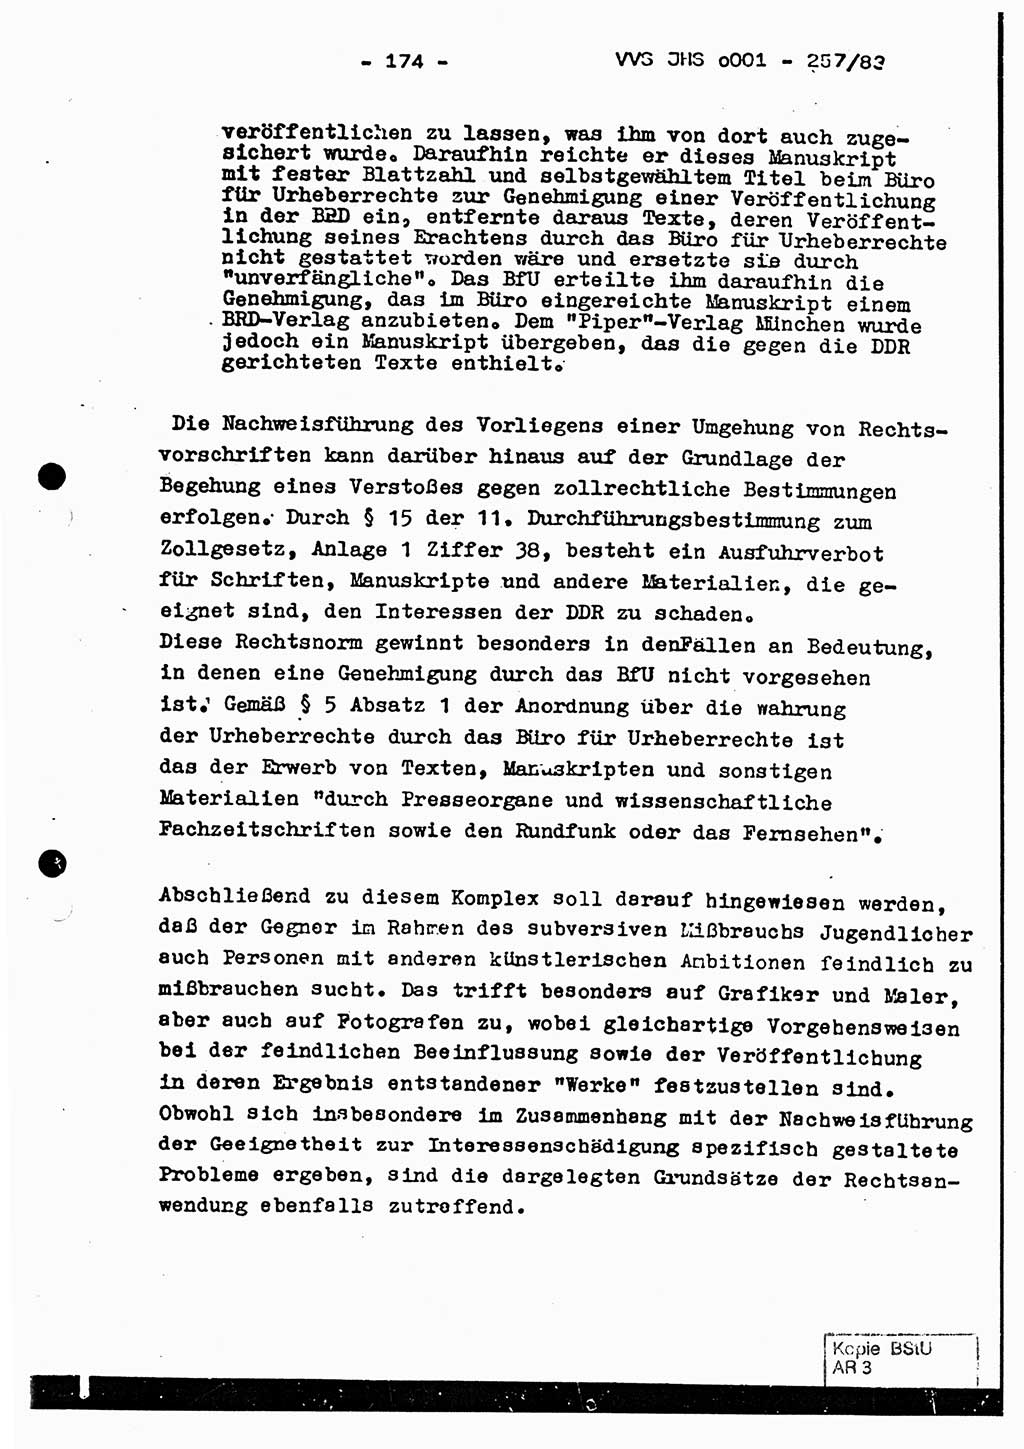 Dissertation, Oberst Helmut Lubas (BV Mdg.), Oberstleutnant Manfred Eschberger (HA IX), Oberleutnant Hans-Jürgen Ludwig (JHS), Ministerium für Staatssicherheit (MfS) [Deutsche Demokratische Republik (DDR)], Juristische Hochschule (JHS), Vertrauliche Verschlußsache (VVS) o001-257/83, Potsdam 1983, Seite 174 (Diss. MfS DDR JHS VVS o001-257/83 1983, S. 174)